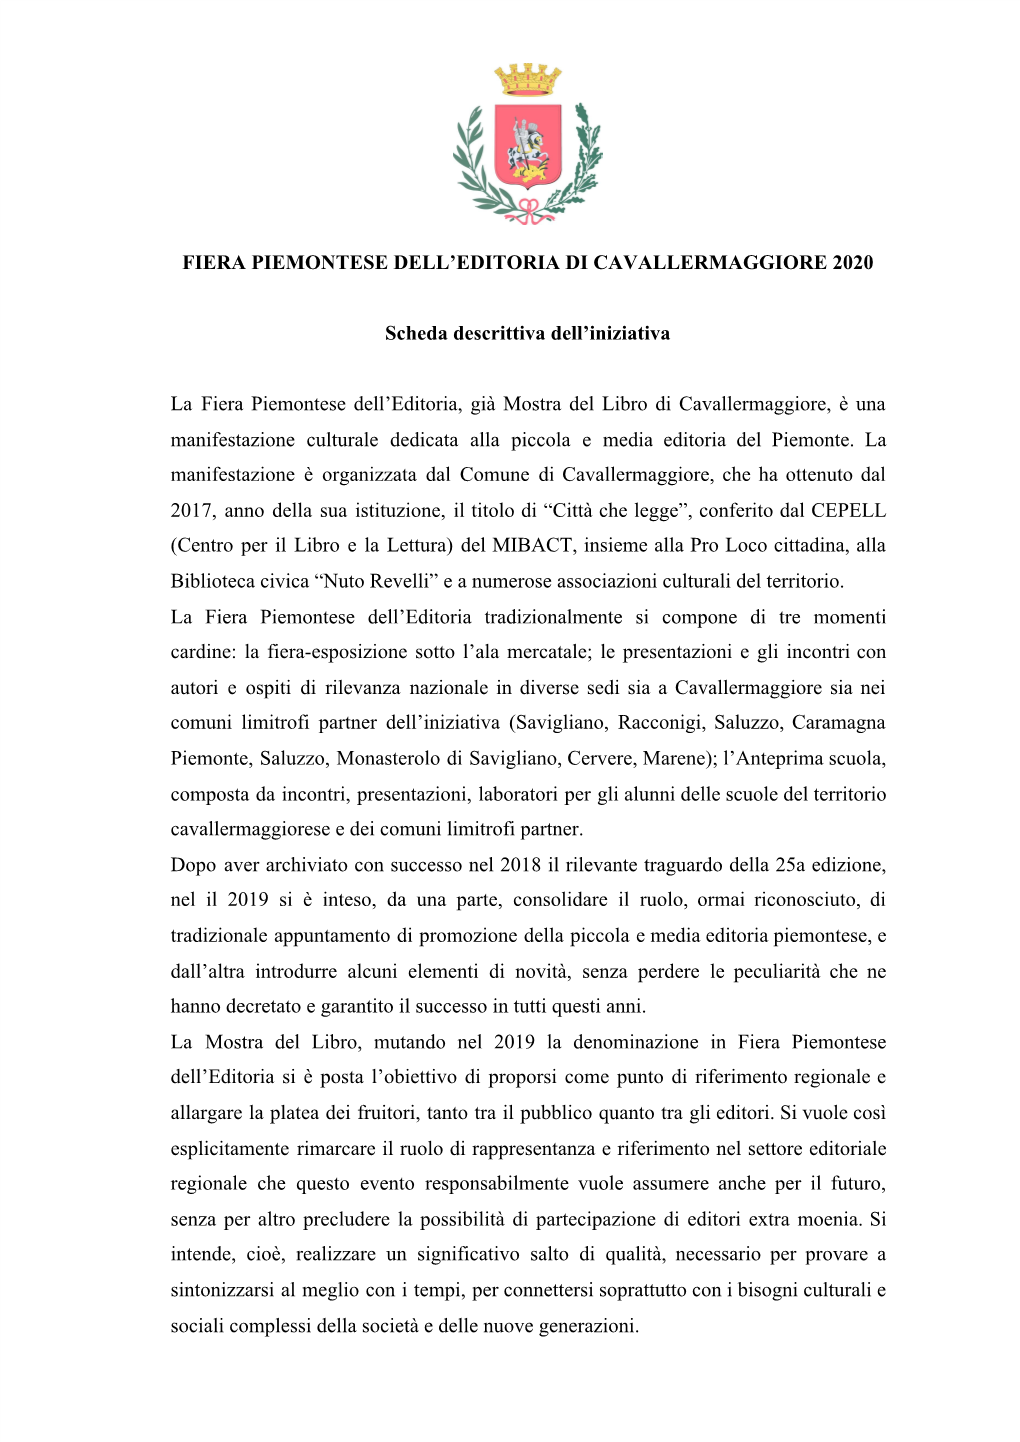 FIERA PIEMONTESE DELL'editoria DI CAVALLERMAGGIORE 2020 Scheda Descrittiva Dell'iniziativa La Fiera Piemontese Dell'editor